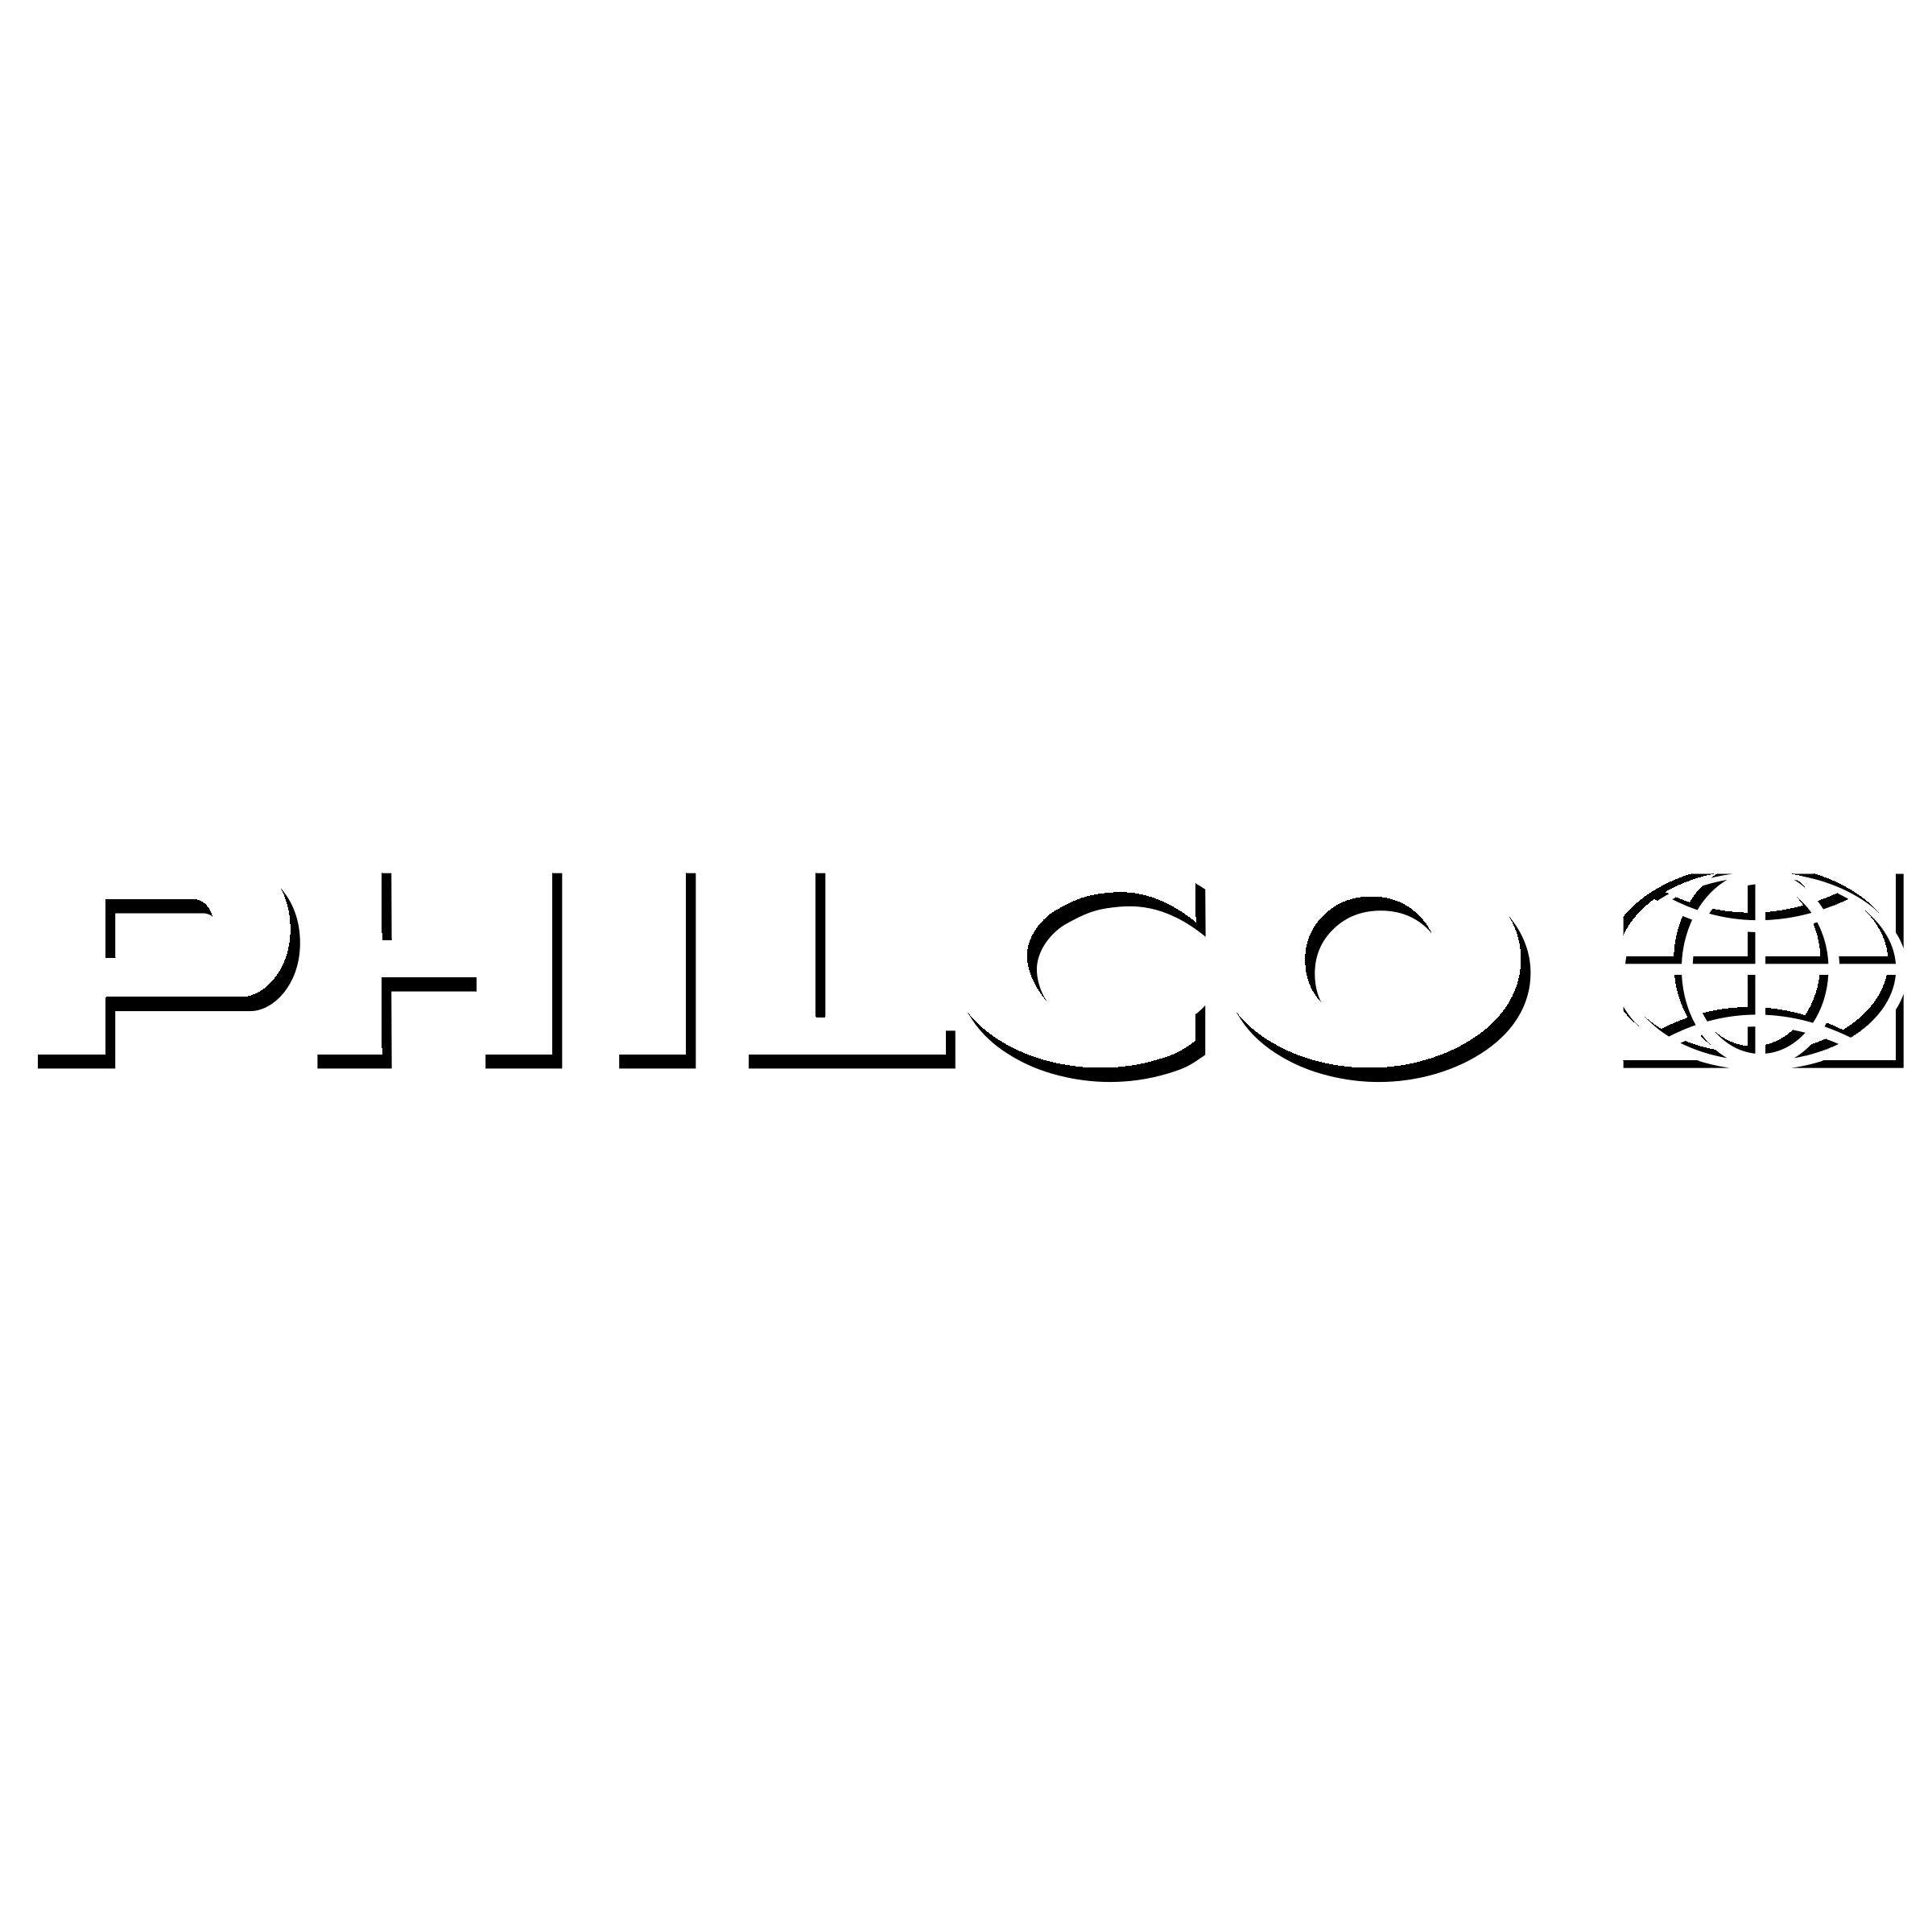 Philco Logo - Philco Logo PNG Transparent & SVG Vector - Freebie Supply